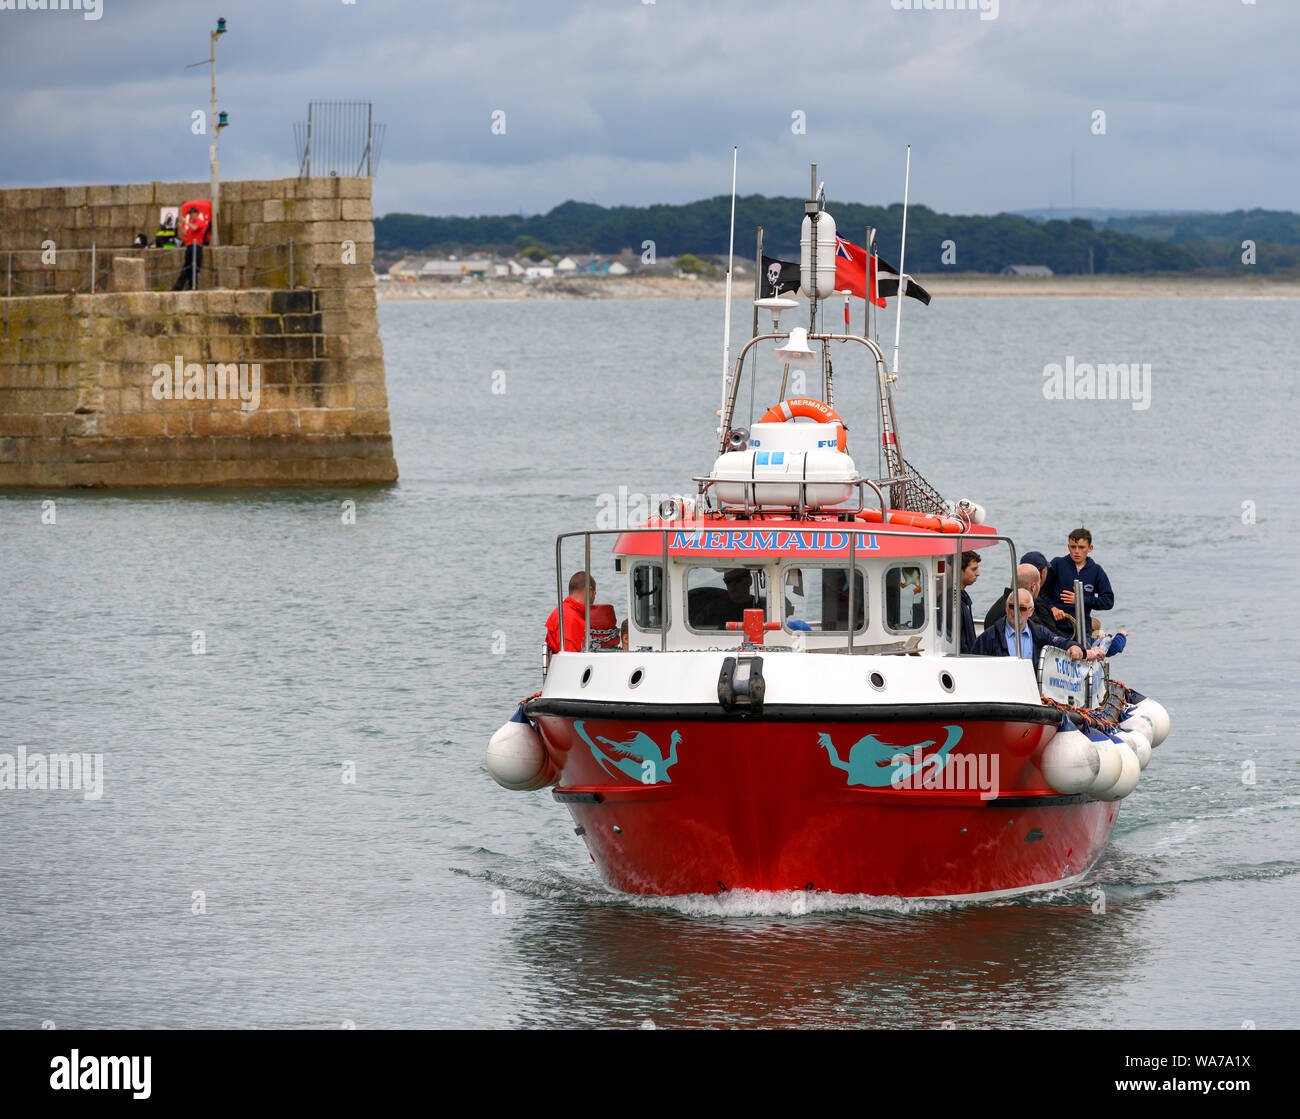 MV un voyage d'agrément tourisme navire entrant dans le port de Penzance avec touristes à bord, le port de Penzance, Cornwall, England, UK. Banque D'Images